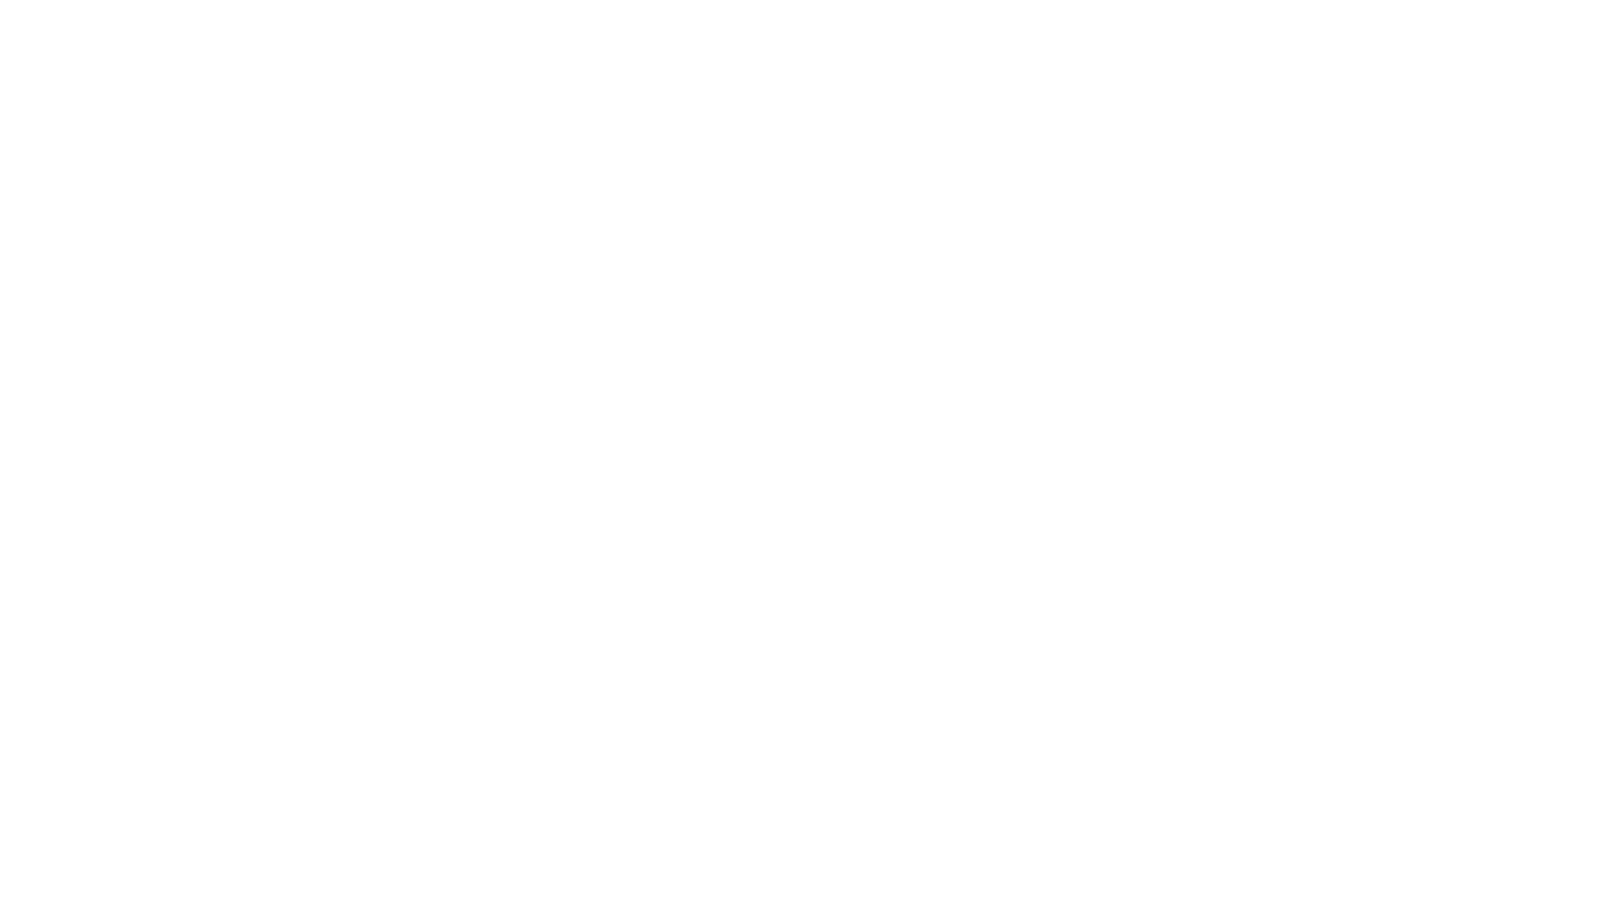 グレップ金沢本店通販：
http://www.grep-tsuhan.net

Love Colour 
http://www.grep-tsuhan.net/?pid=168868961


■サークル
Rolling Contact

■原作
東方Project

■ジャンル
同人音楽

■作者
Amane Oikawa

■発行日
2022年 05月 08日

■商品説明

光の粒で彩られた、音の魔法
新進気鋭、最先端のジャンル「カラー・ベース」をテーマにした
キラキラとハードが融合した極上のクラブミュージックサウンド

■収録曲

01.Fragment Of Moon
砕月 / 東方萃夢想

02.Emotional Valley
神々が恋した幻想郷 / 東方風神録

03.Order To Thumbs Up
竹取飛翔 ～Lunatic Princess / 東方永夜抄

04.Nothingness (Colour Bass Remix)
プレインエイジア / 東方永夜抄

05.Lunatic Vengeance
ピュアヒューリーズ ～心の在処 / 東方紺珠伝

06.Melting Marshmallow -Sharp Refix-
ヴワル魔法図書館 / 東方紅魔郷

07.Patched Lie
秘匿されたフォーシーズンズ / 東方天空璋

08.Minimal Striker (2022 Remaster)
セラミックスの杖刀人 / 東方鬼形獣

09.Legendary Harvester
稲田姫様に叱られるから / 東方風神録

10.Flesh & Bone
星降る天魔の山 / 東方虹龍洞